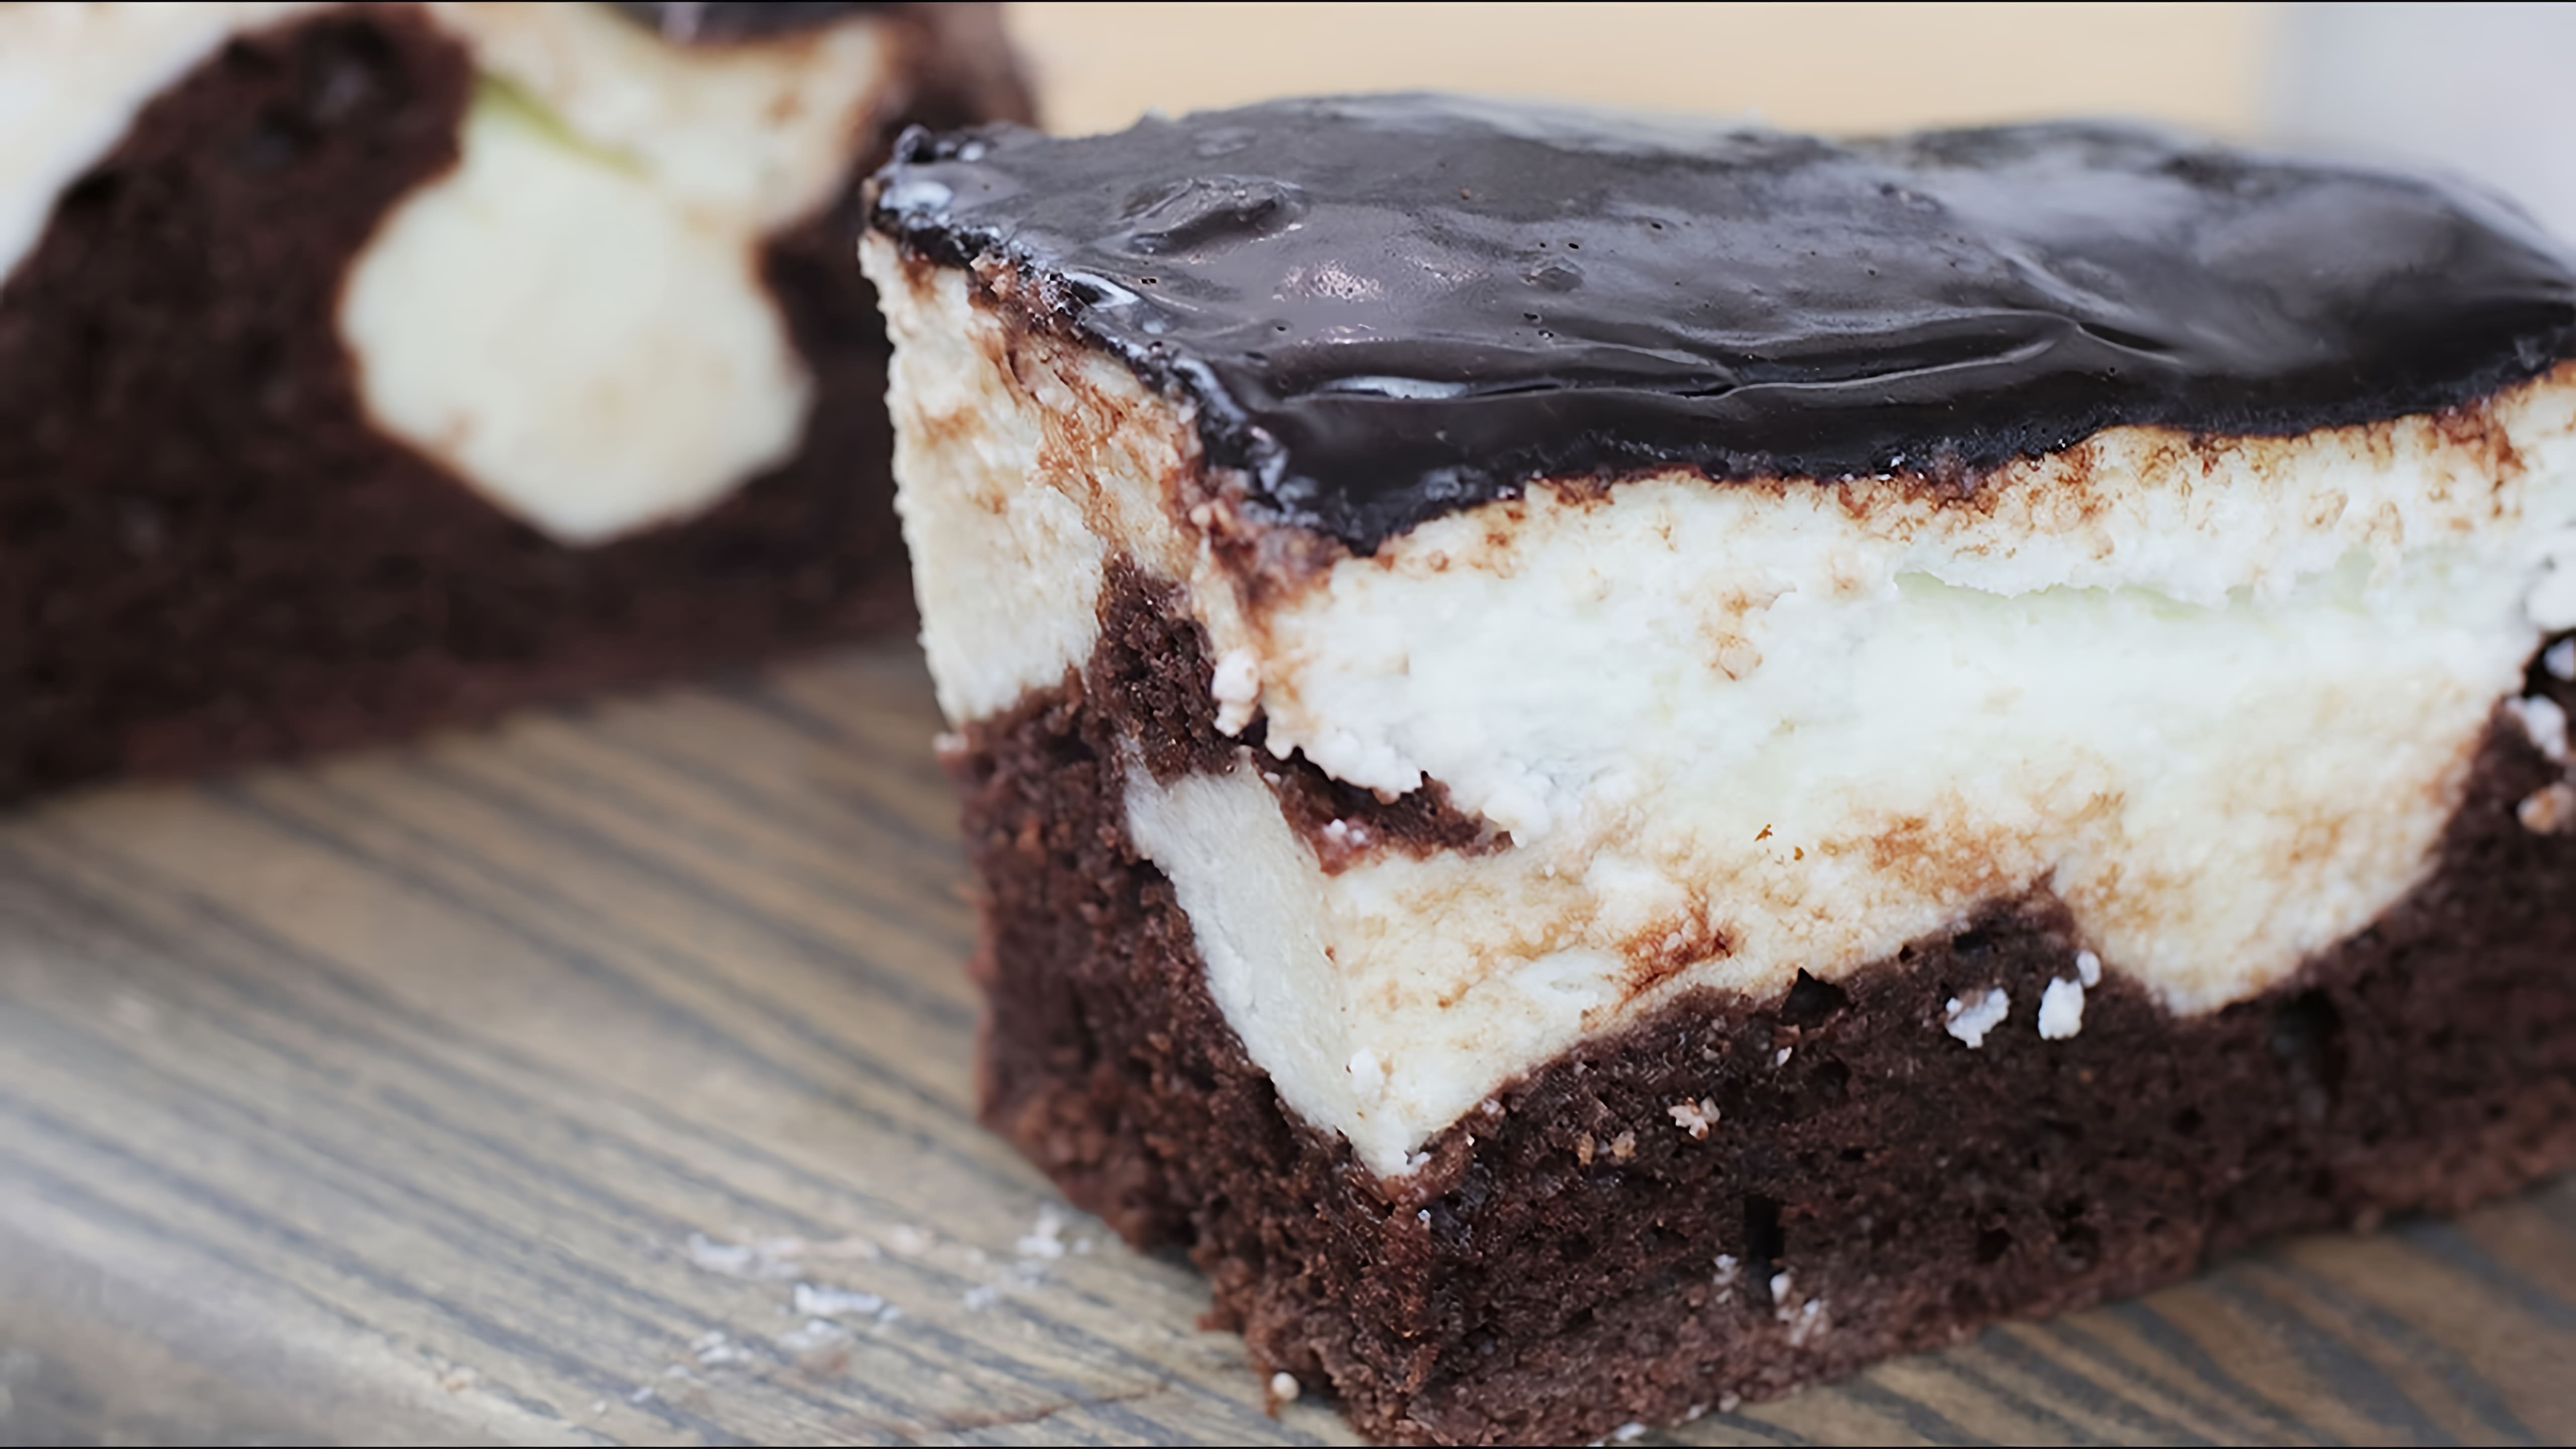 В этом видео демонстрируется рецепт приготовления нежного творожного шоколадного пирога